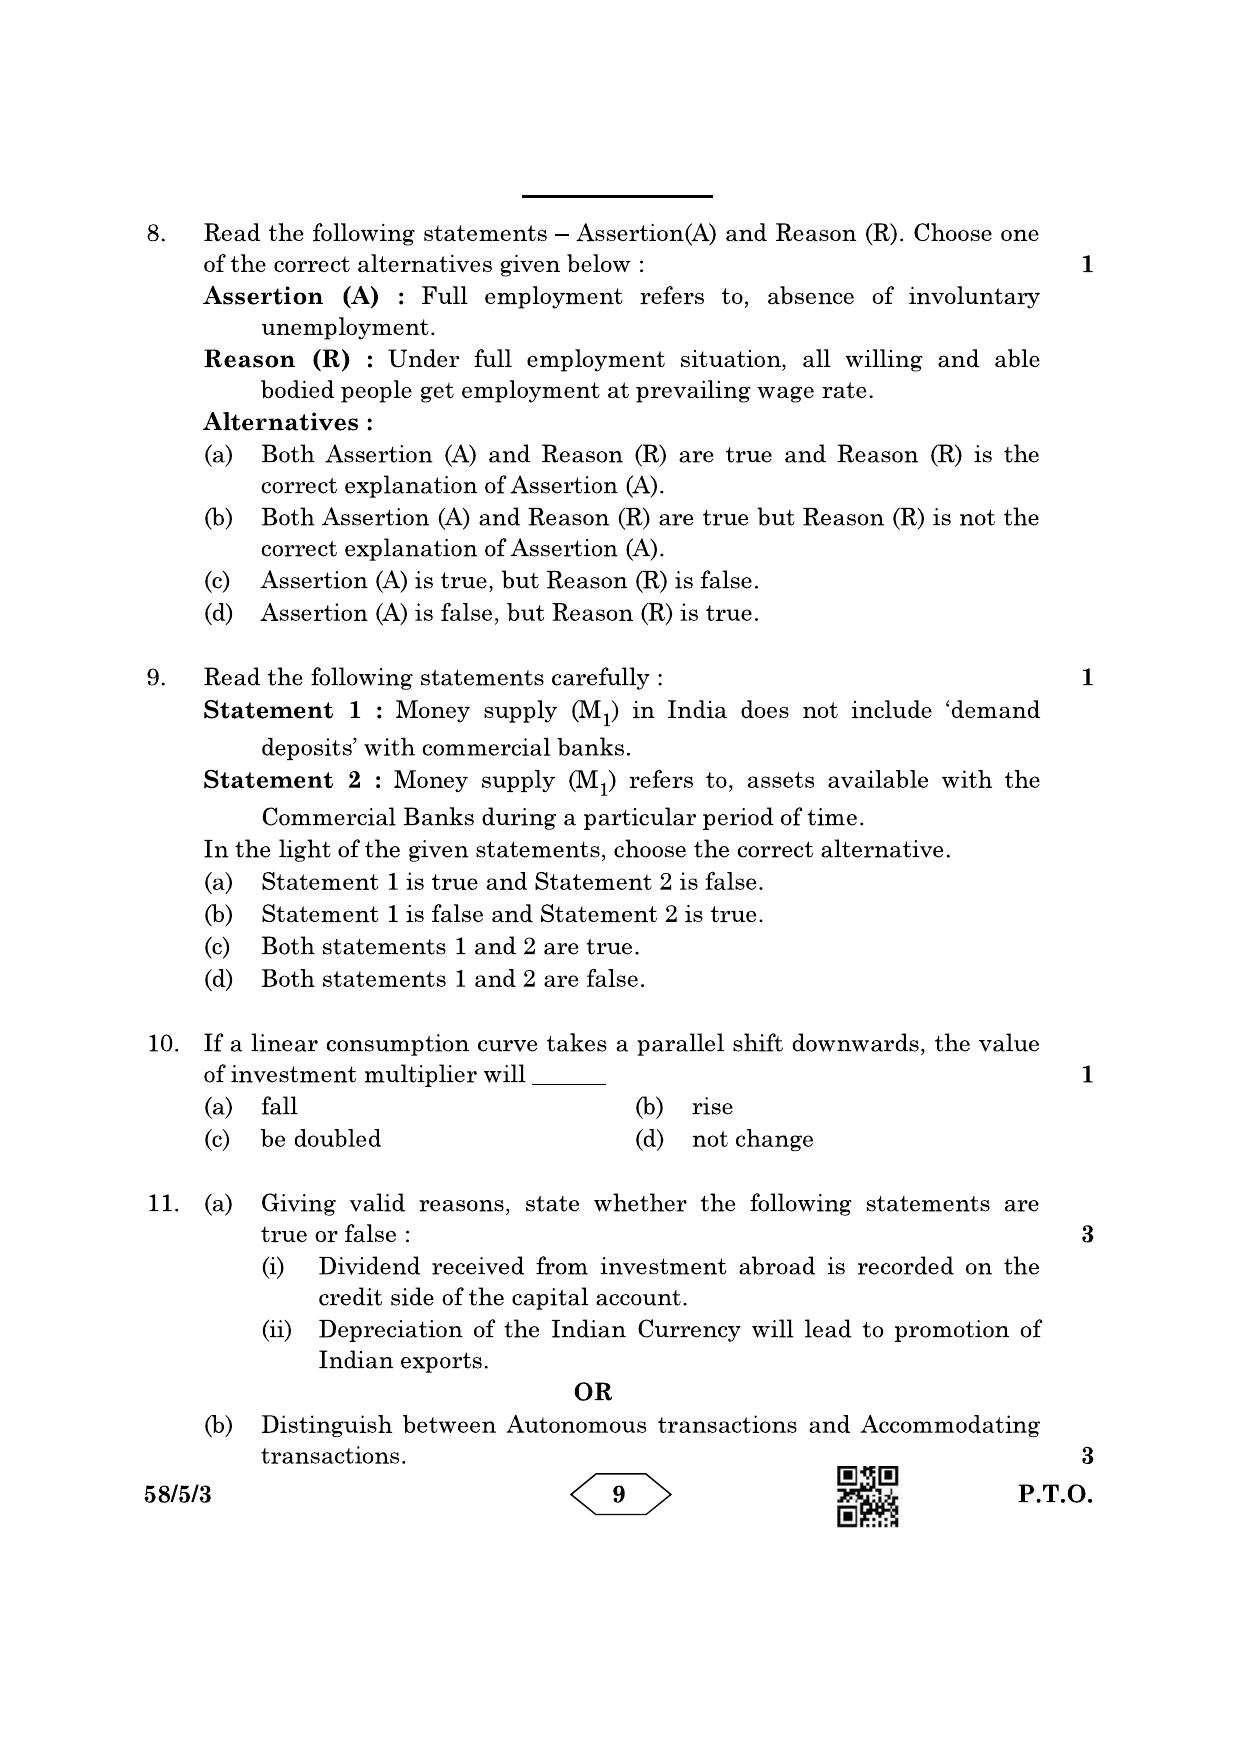 CBSE Class 12 58-5-3 Economics 2023 Question Paper - Page 9